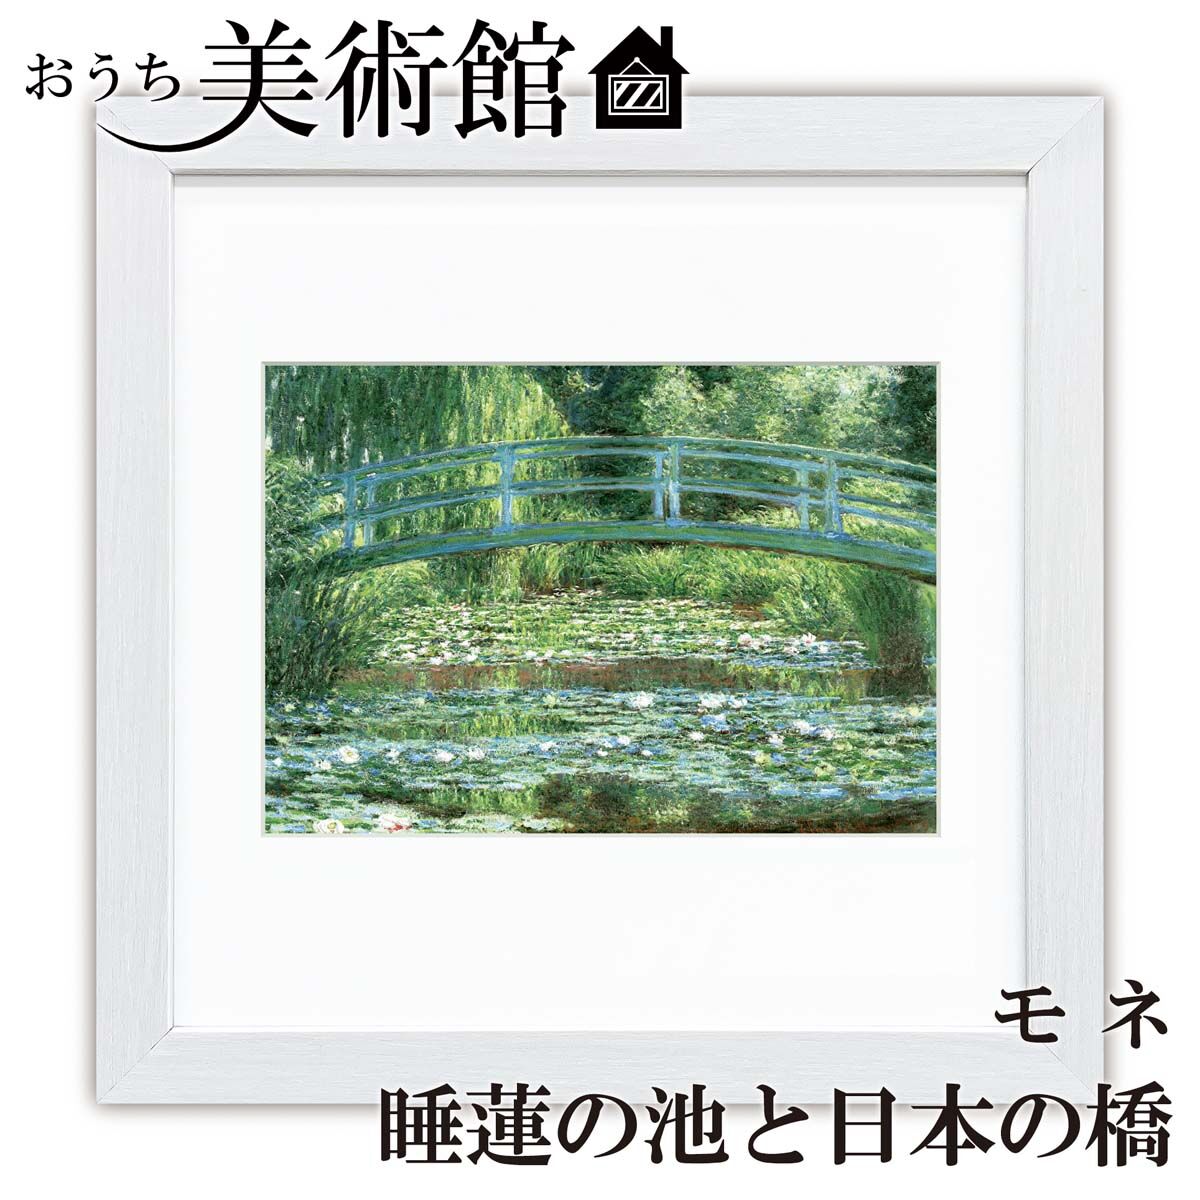 モネ「睡蓮の池と日本の橋」美術工芸版画 世界の名画 額付き 絵画 洋画 複製【G10-C024】